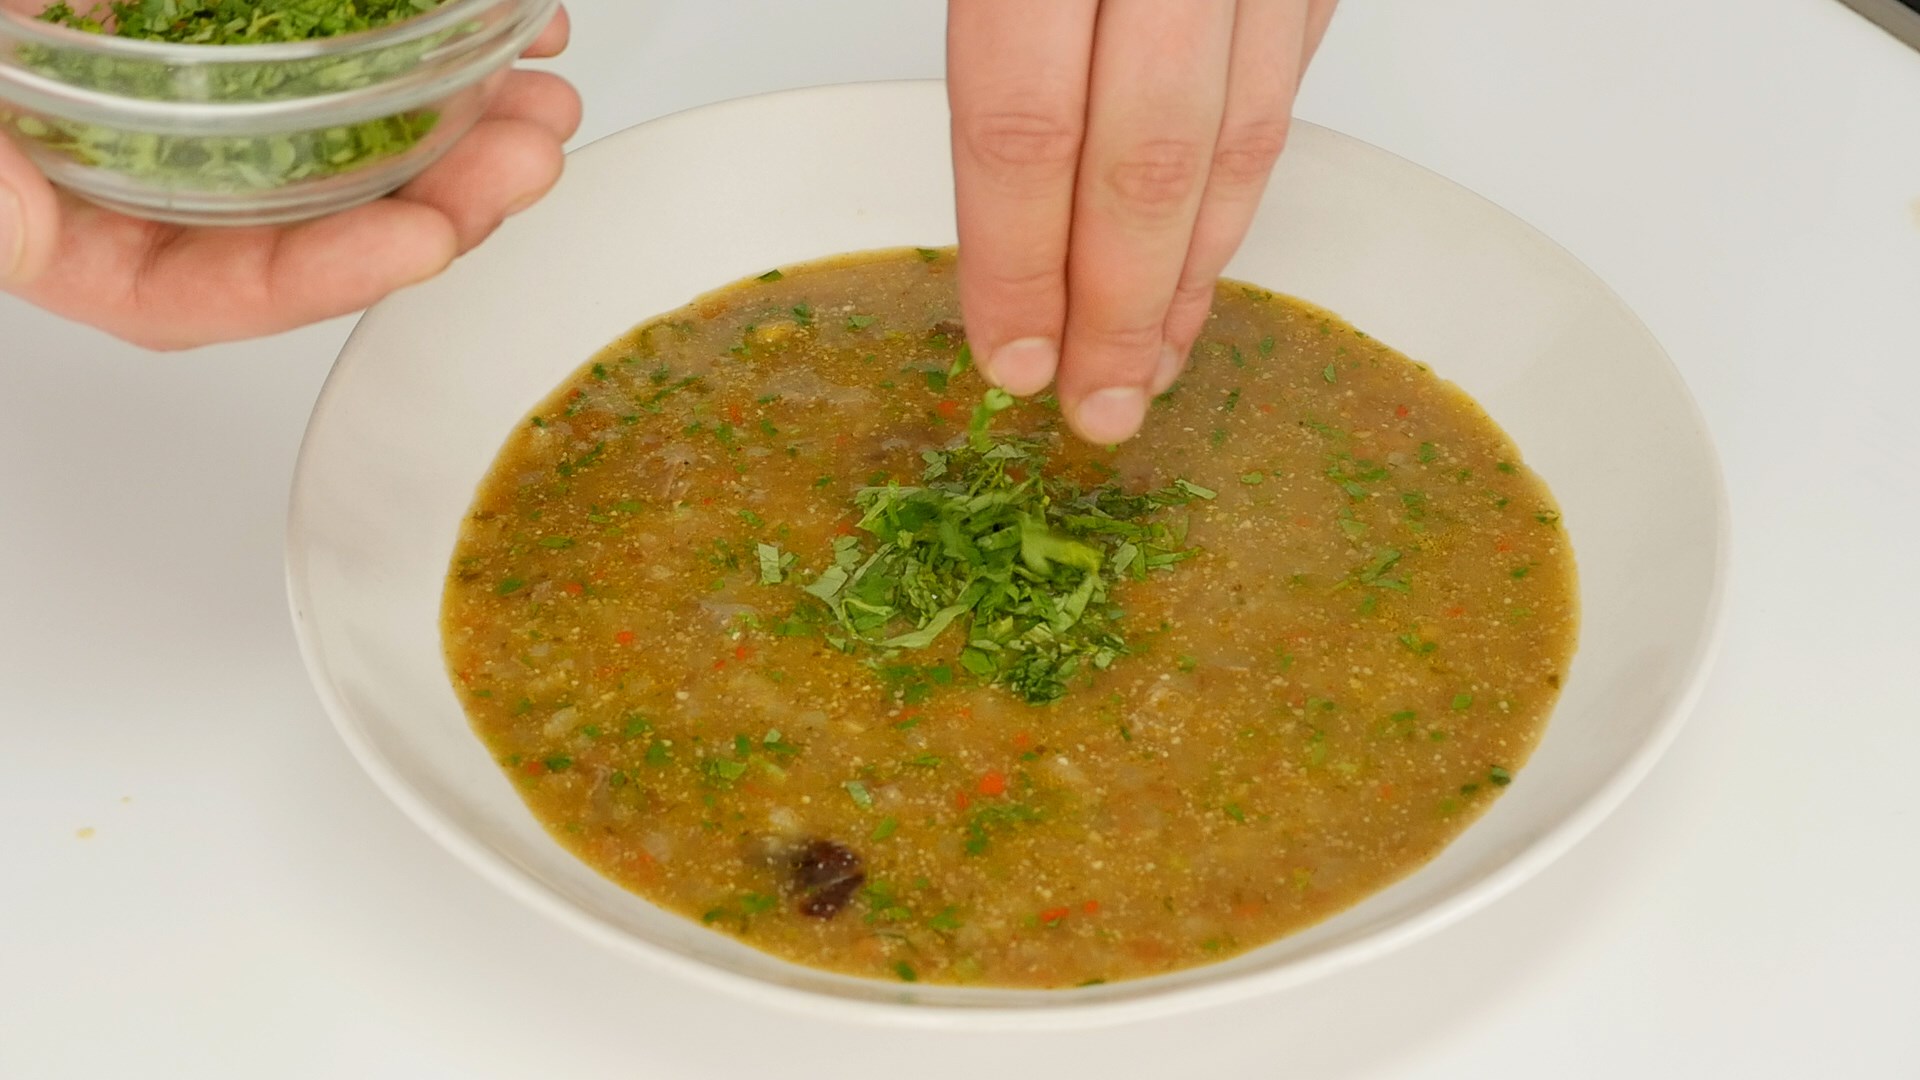 Как готовить суп харчо из свинины?